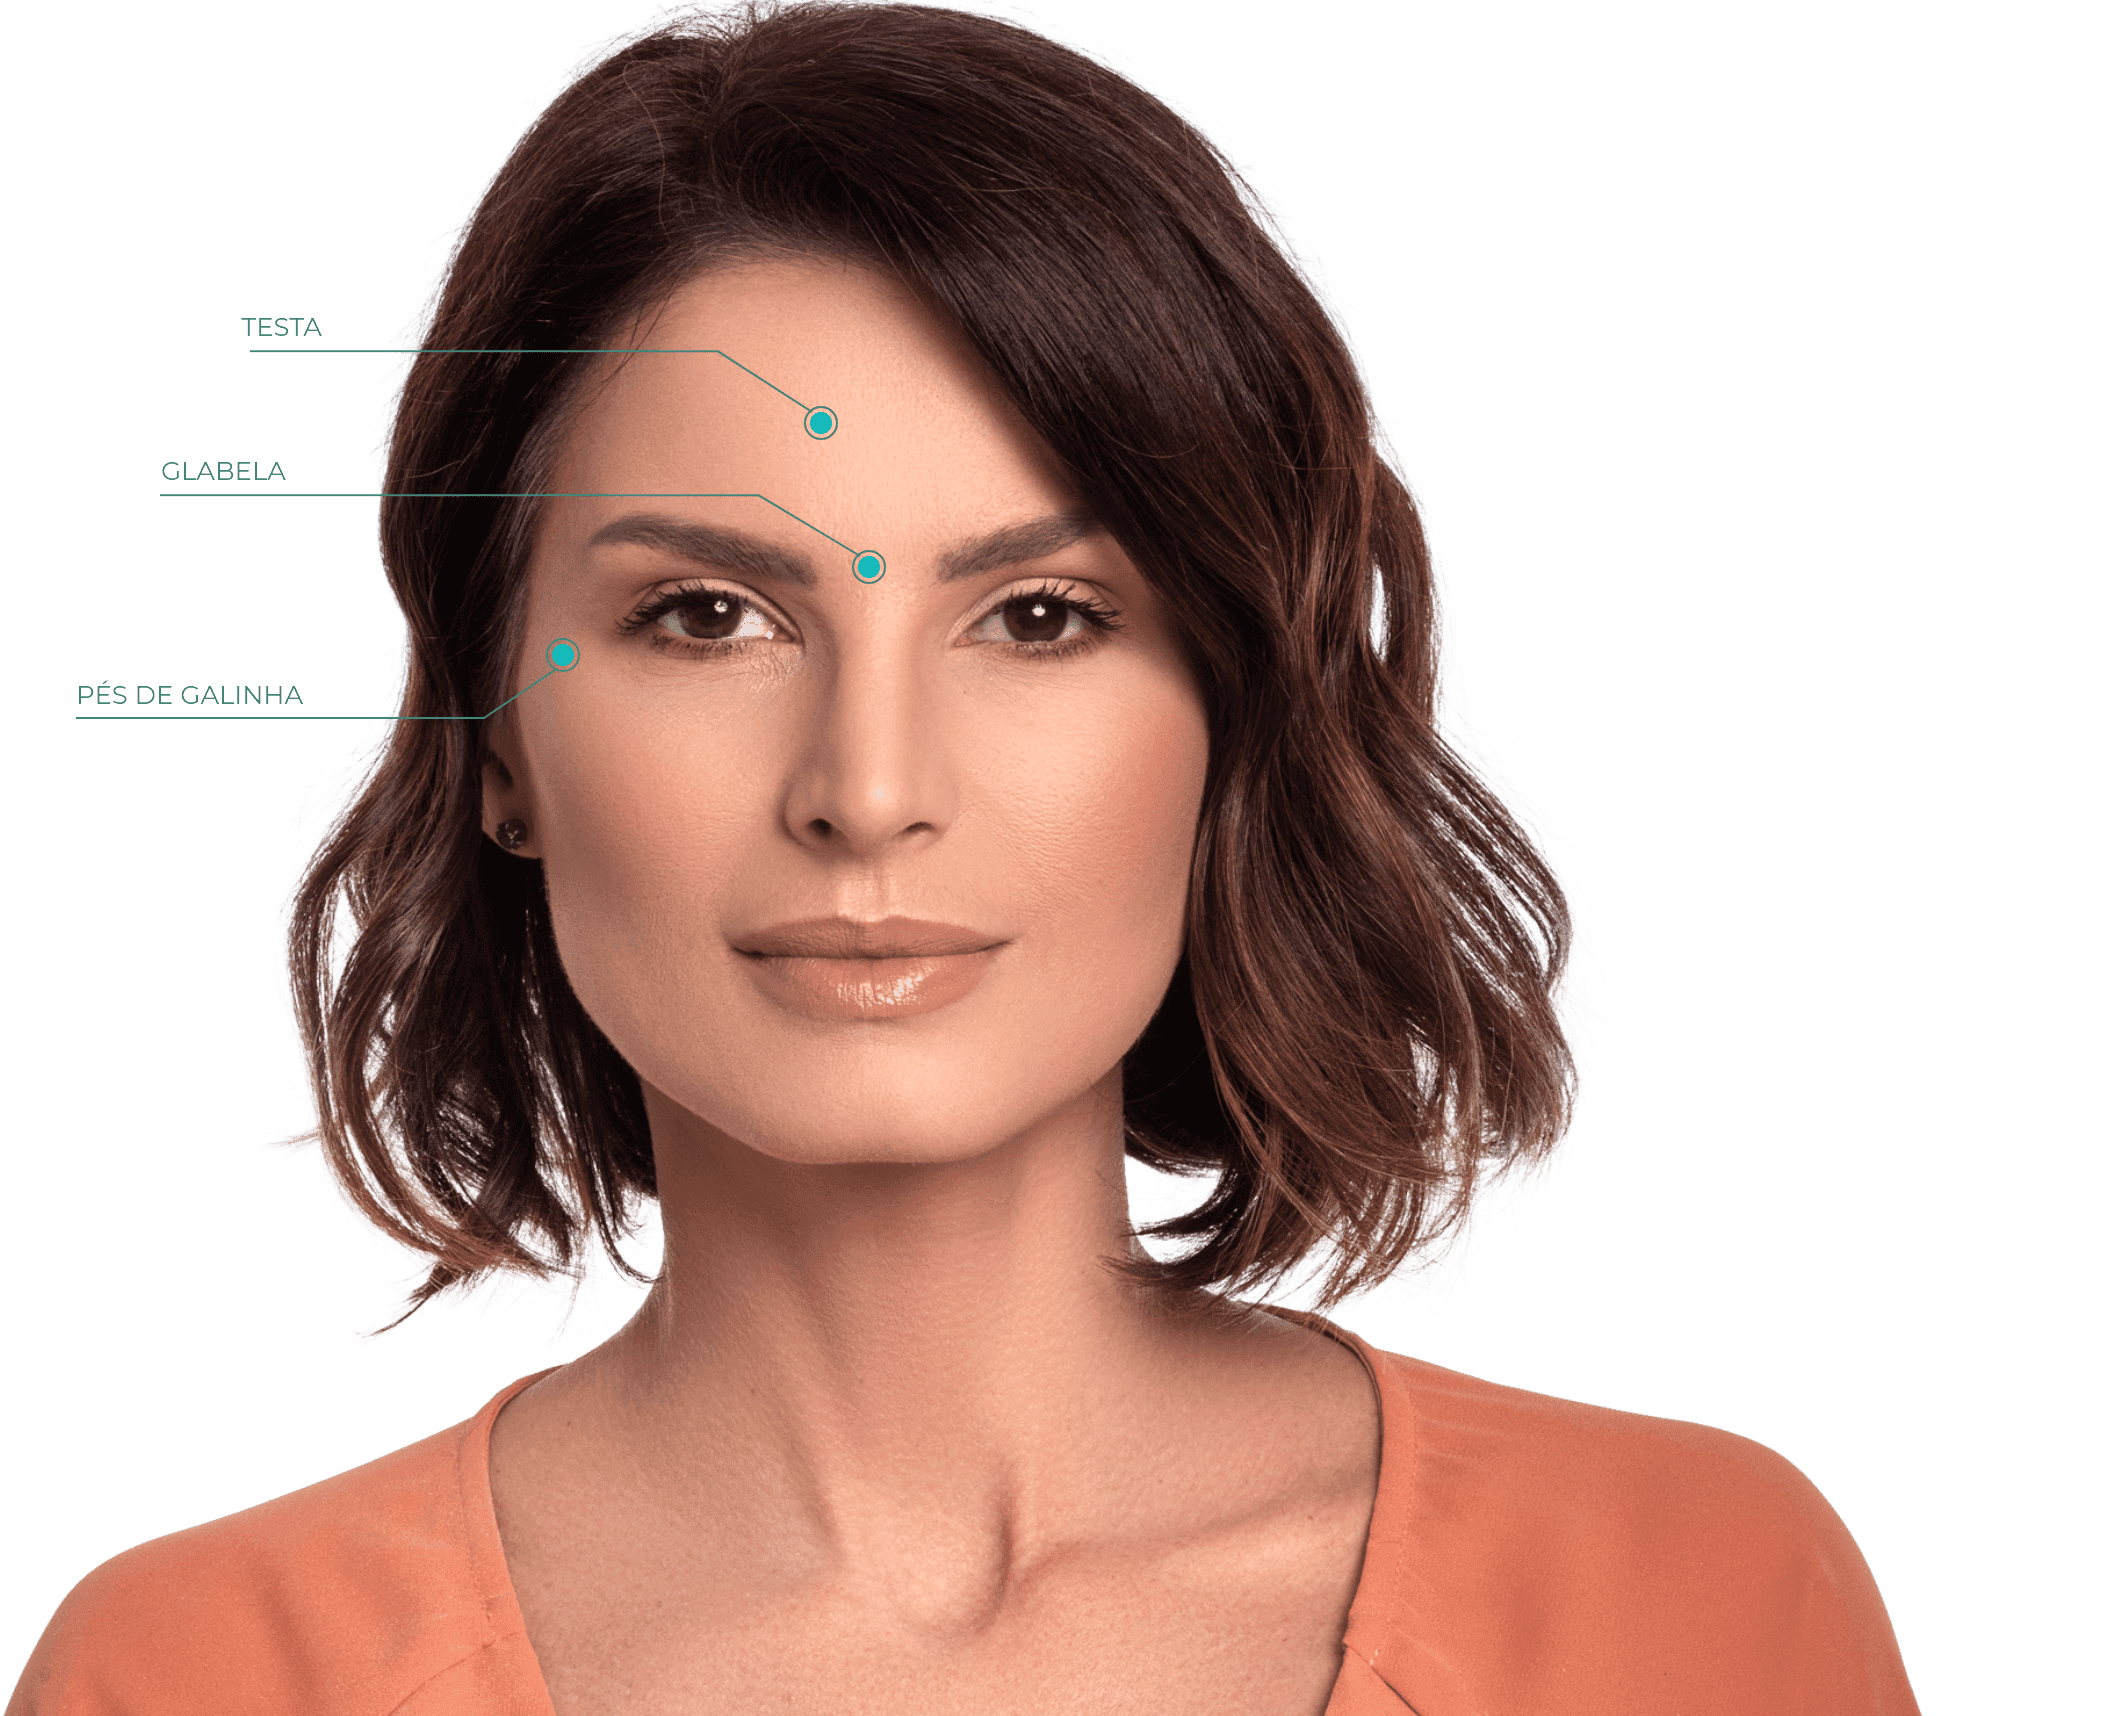 Imagem mostrando os pontos de aplicação de botox no rosto de uma mulher